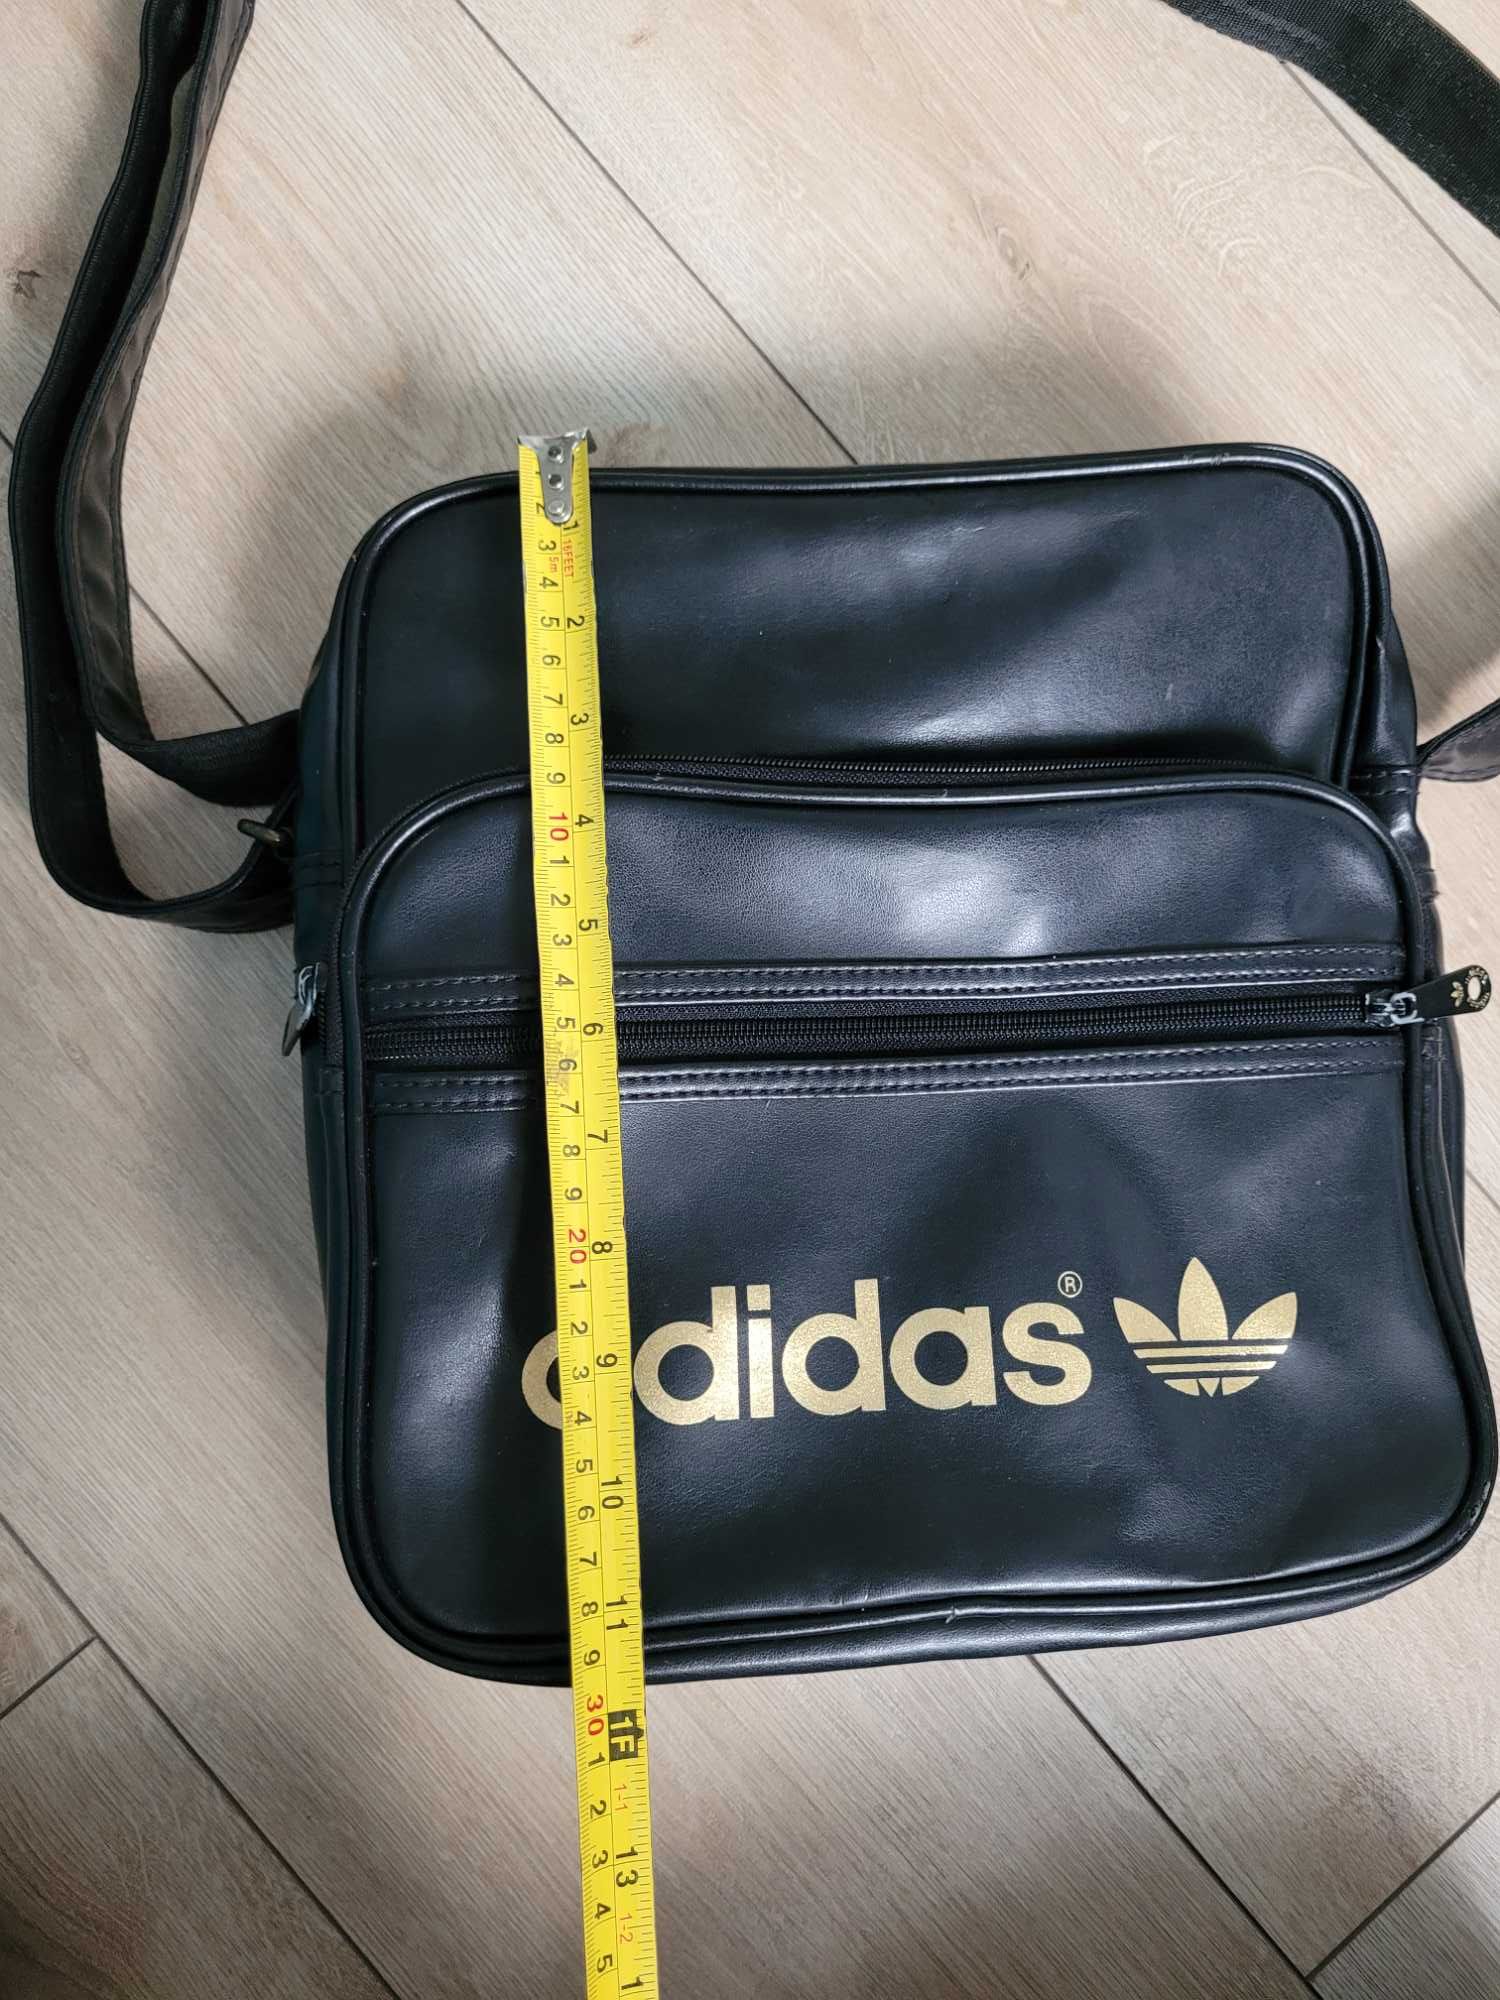 Duża torebka Adidas torba na ramię czarna złota